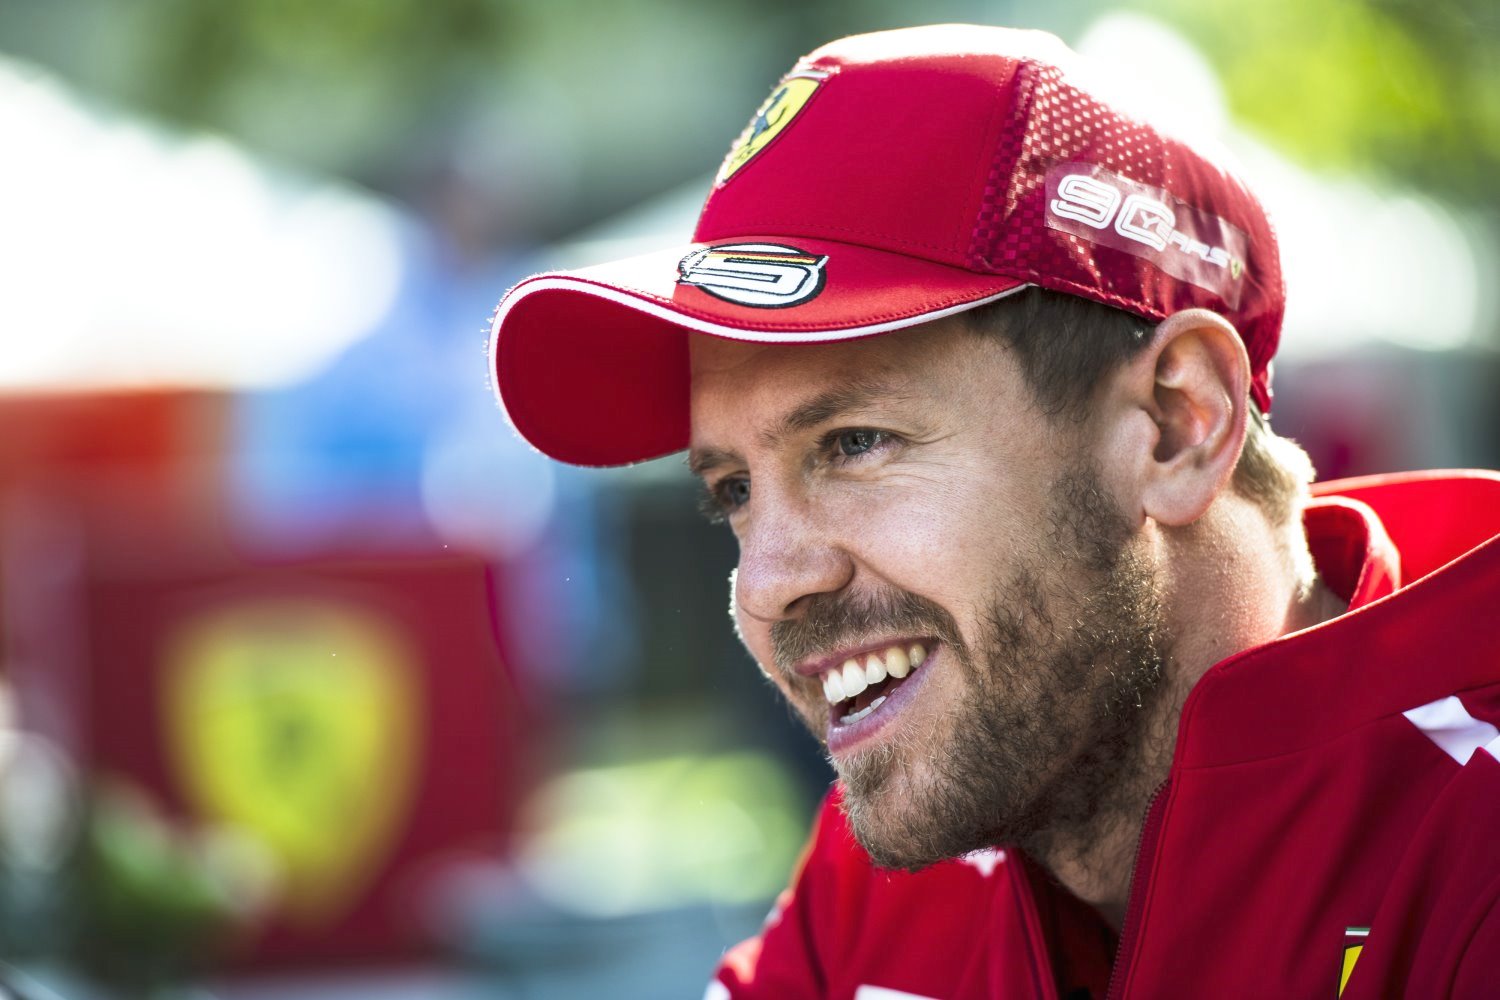 Binotto claims Vettel is happy driving Binotto's inferior designed Ferrari